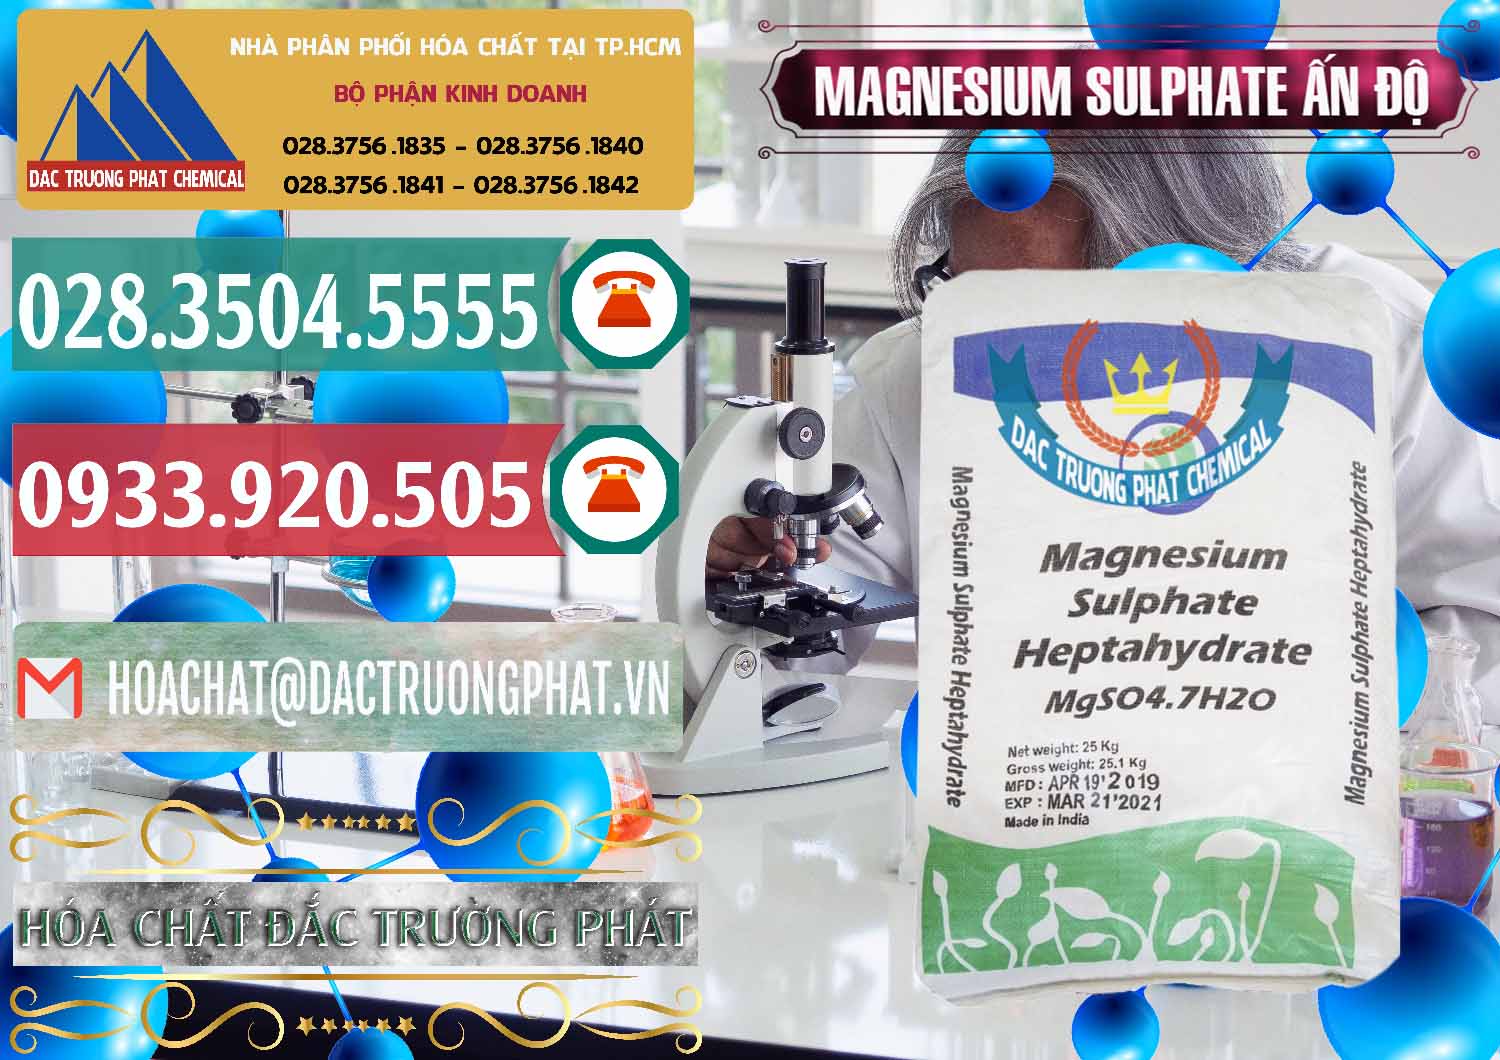 Nhà nhập khẩu - bán MGSO4.7H2O – Magnesium Sulphate Heptahydrate Ấn Độ India - 0362 - Công ty chuyên cung cấp _ bán hóa chất tại TP.HCM - muabanhoachat.vn